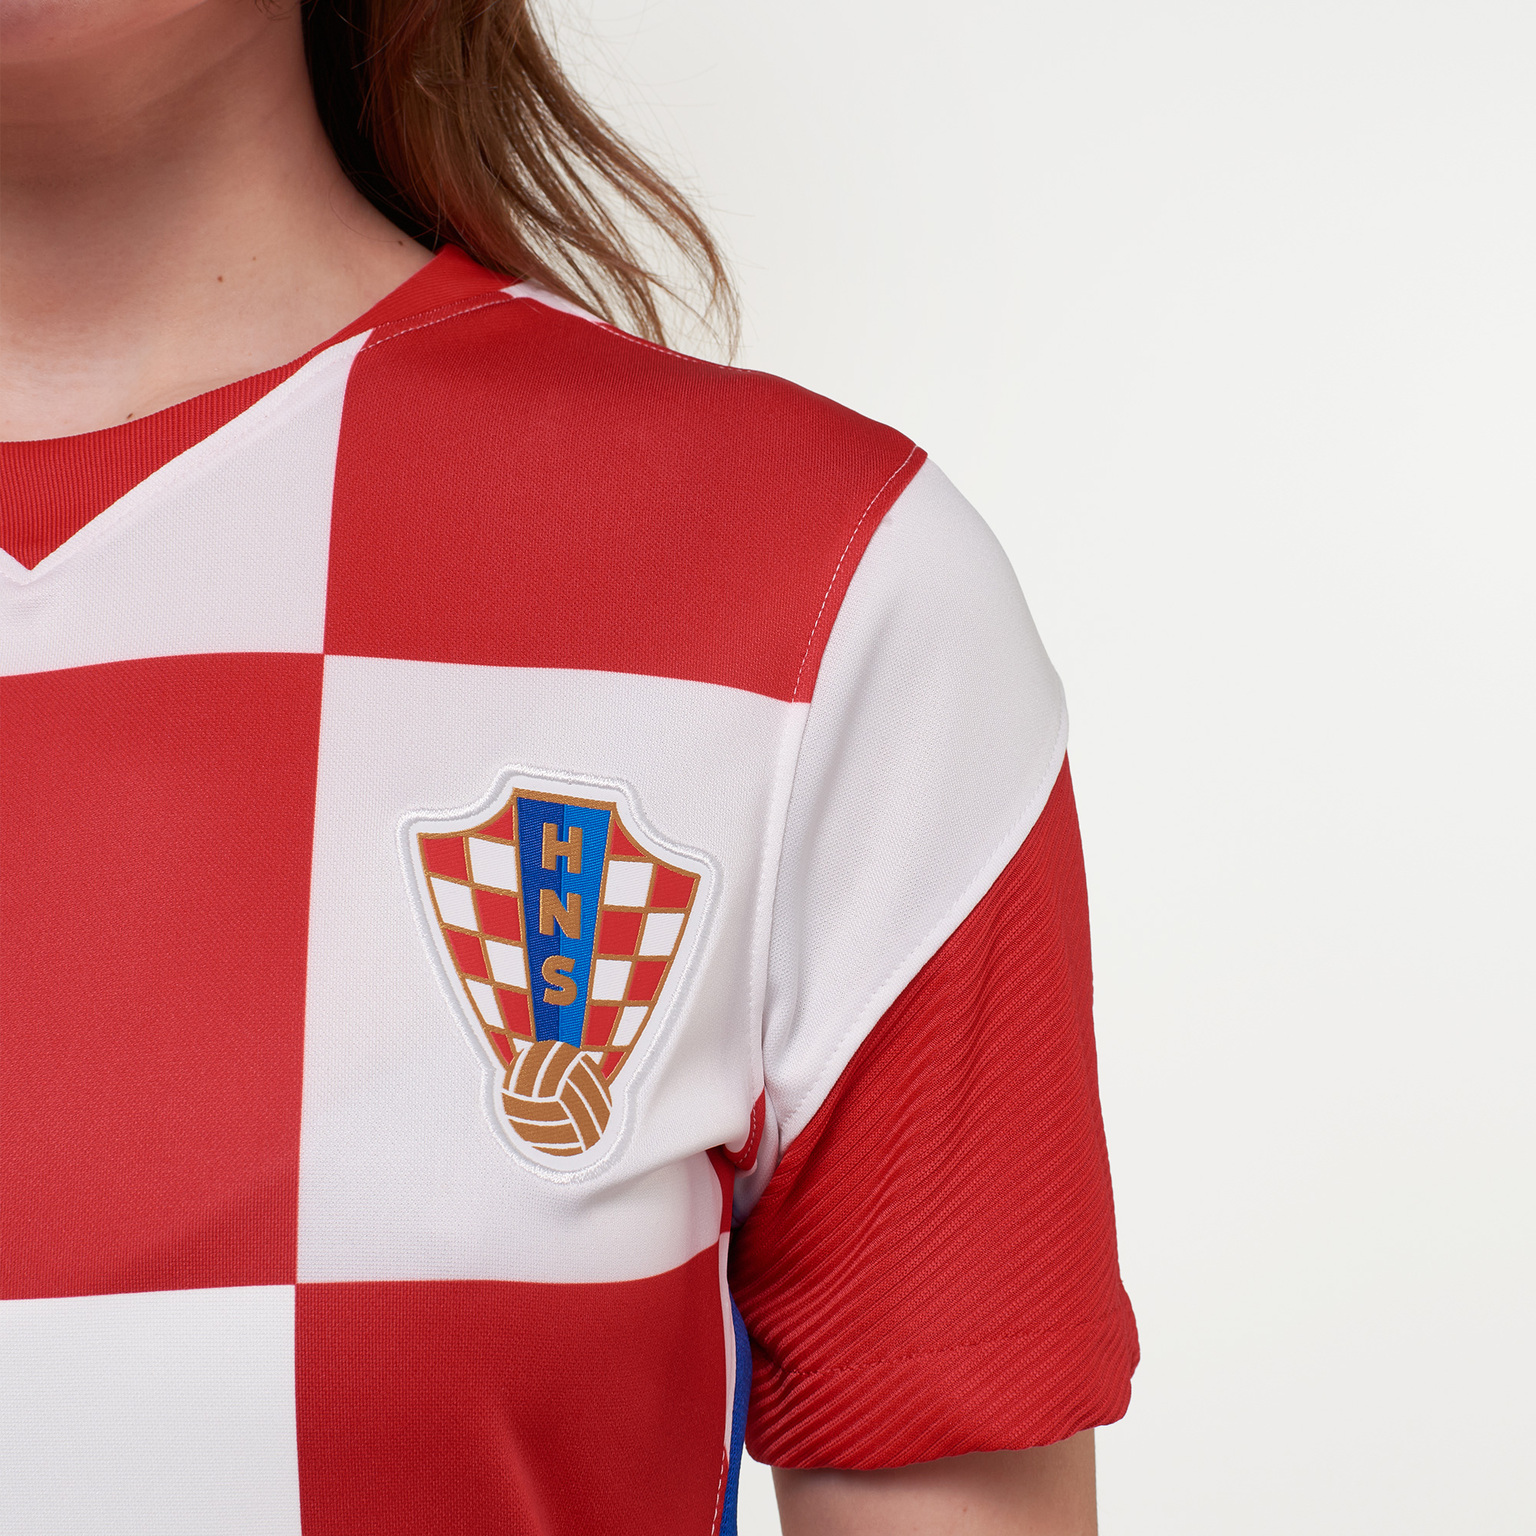 Женская игровая домашняя футболка Nike сборной Хорватии сезон 2020/21